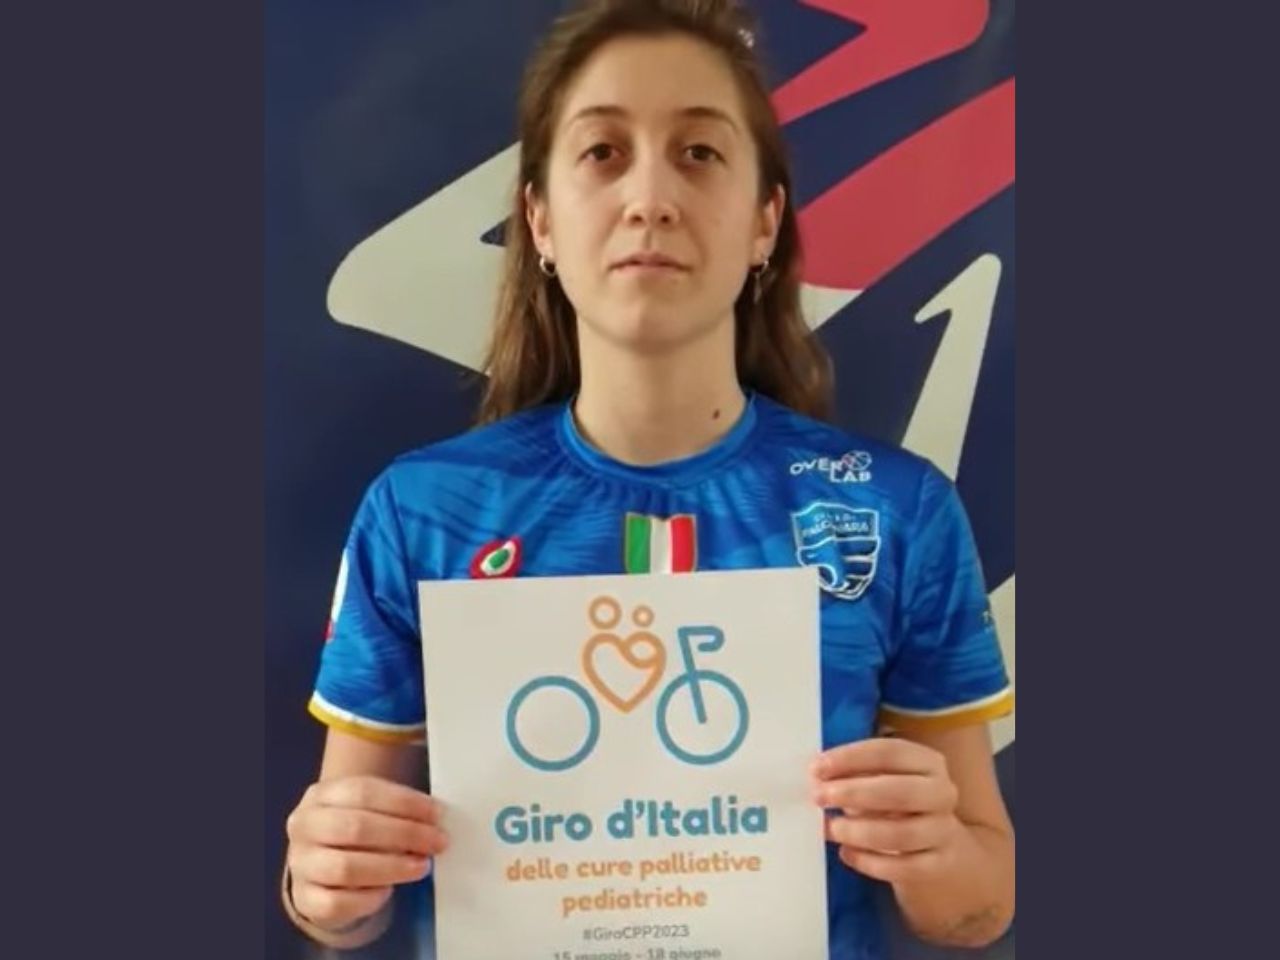 Falconara “pedala” in campo per il Giro d’Italia delle cure palliative pediatriche